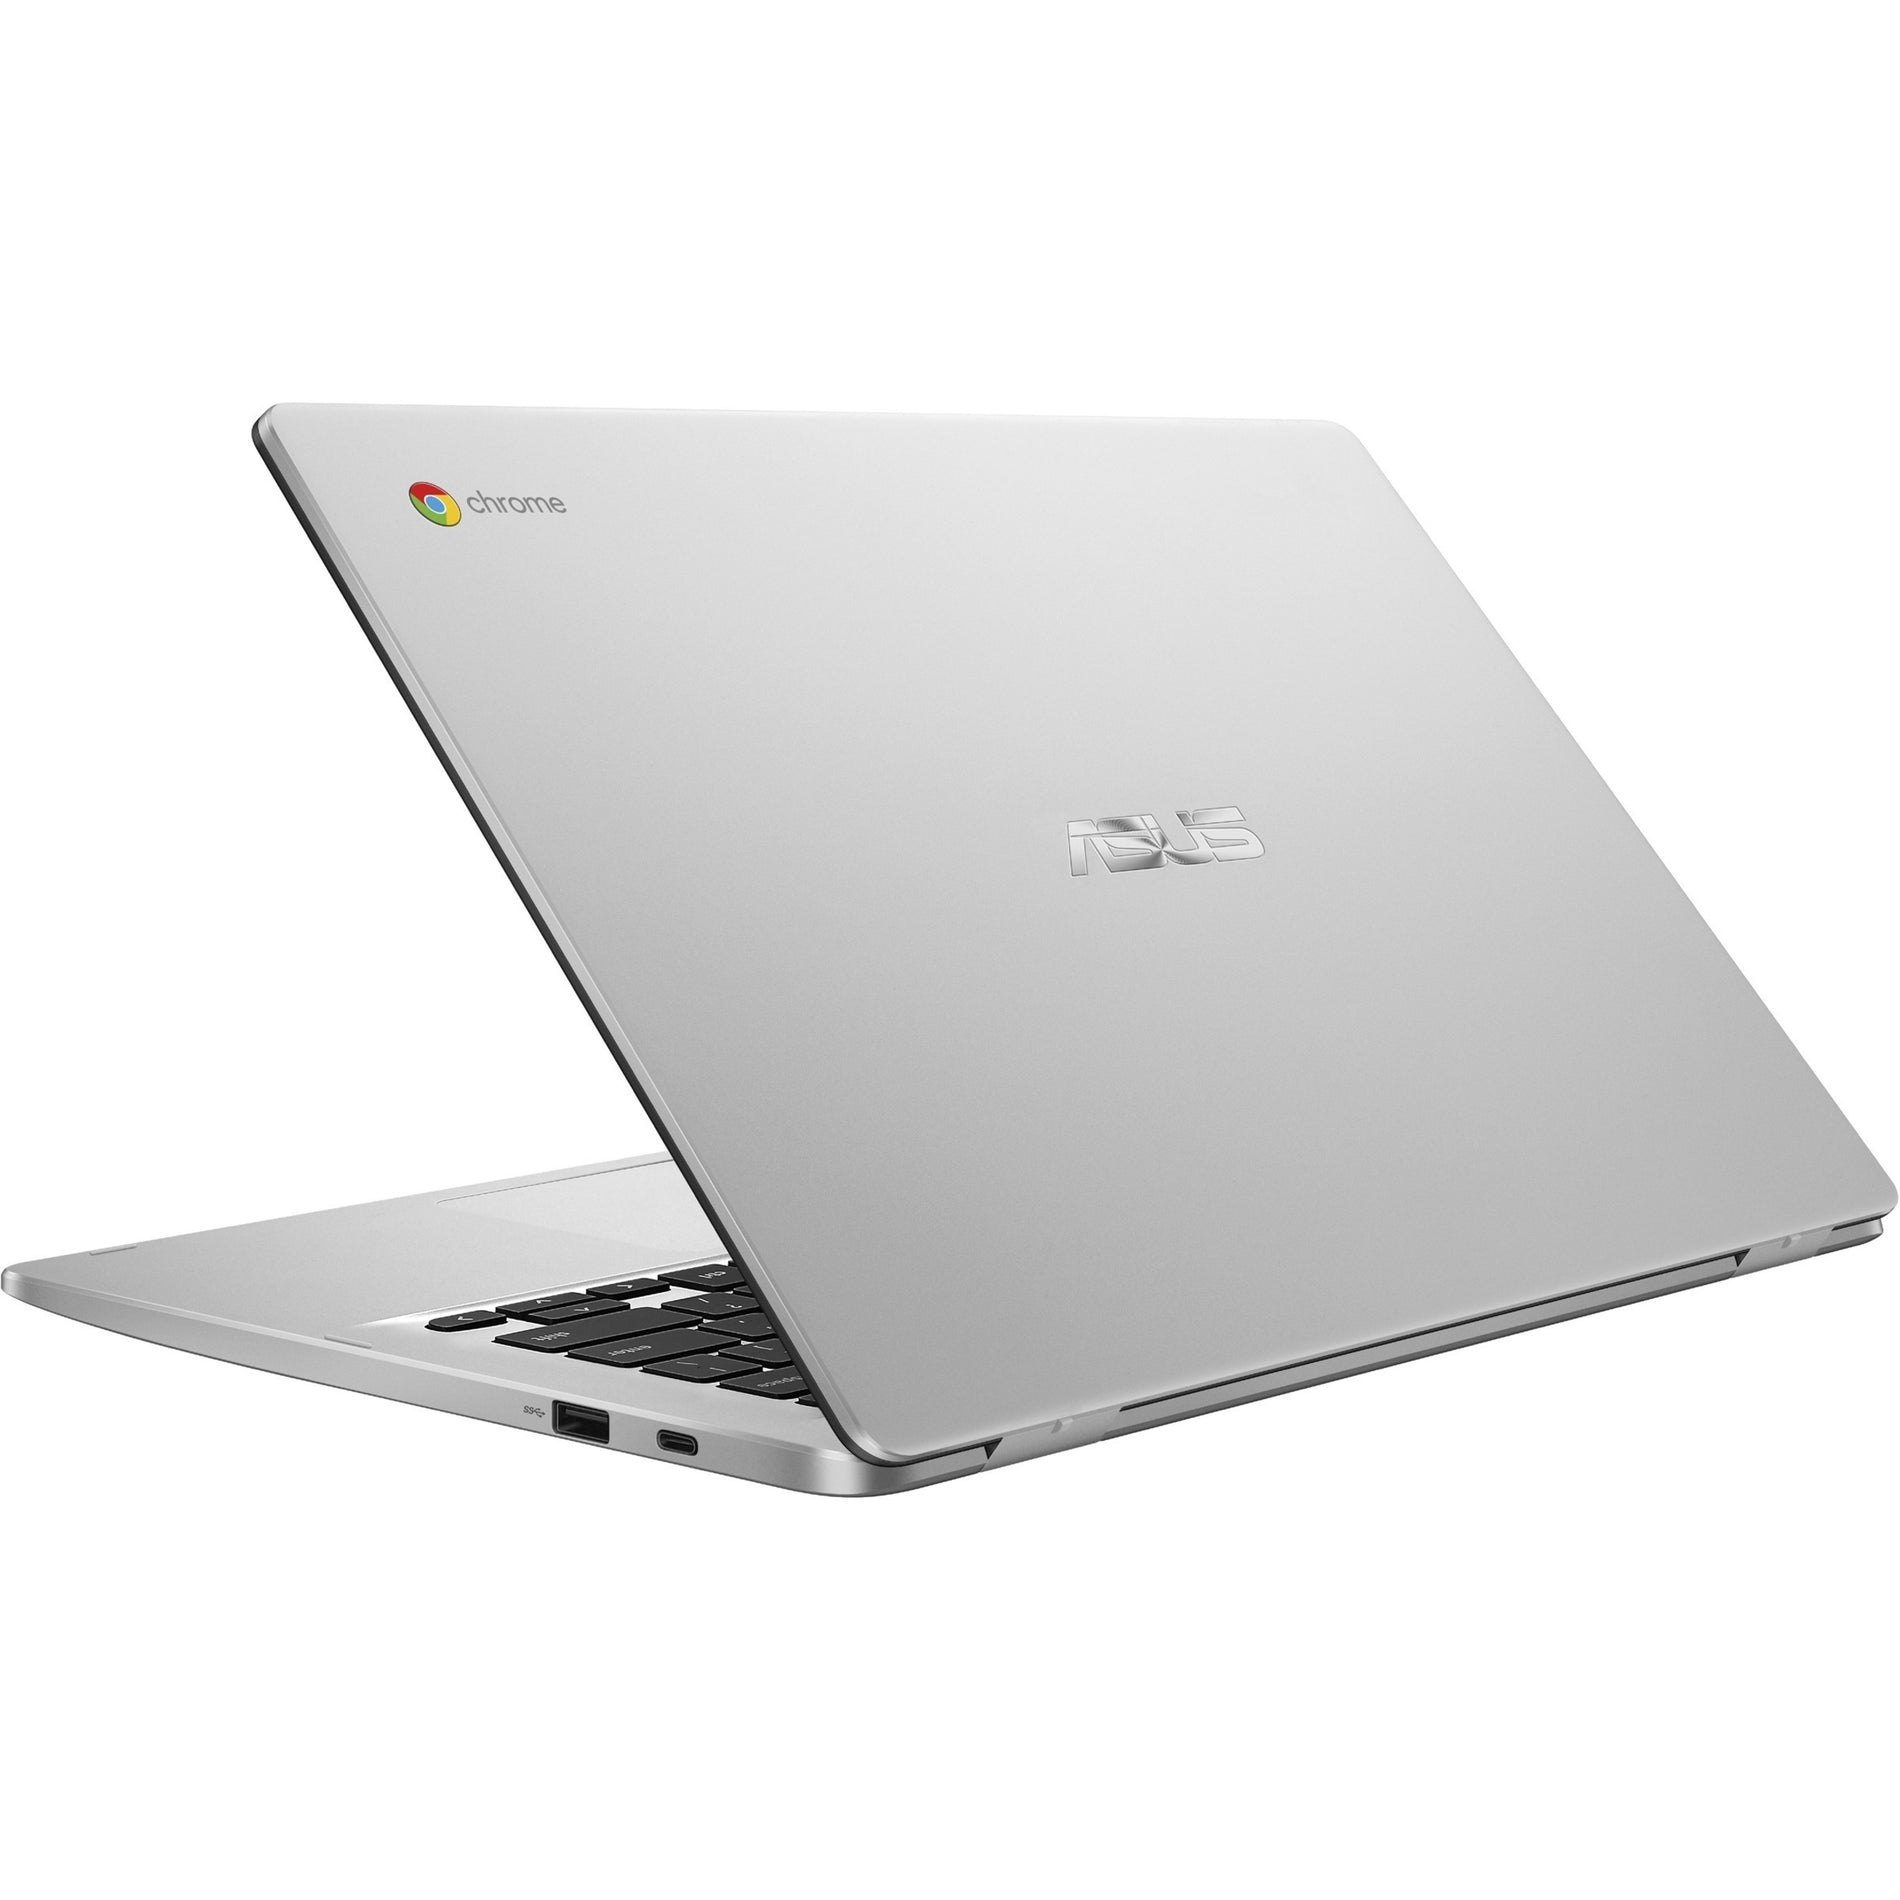 Asus C423NA-DB42F Chromebook 14.0" FHD, Intel Celeron N3350, 4GB RAM, 32GB eMMC, Chrome OS